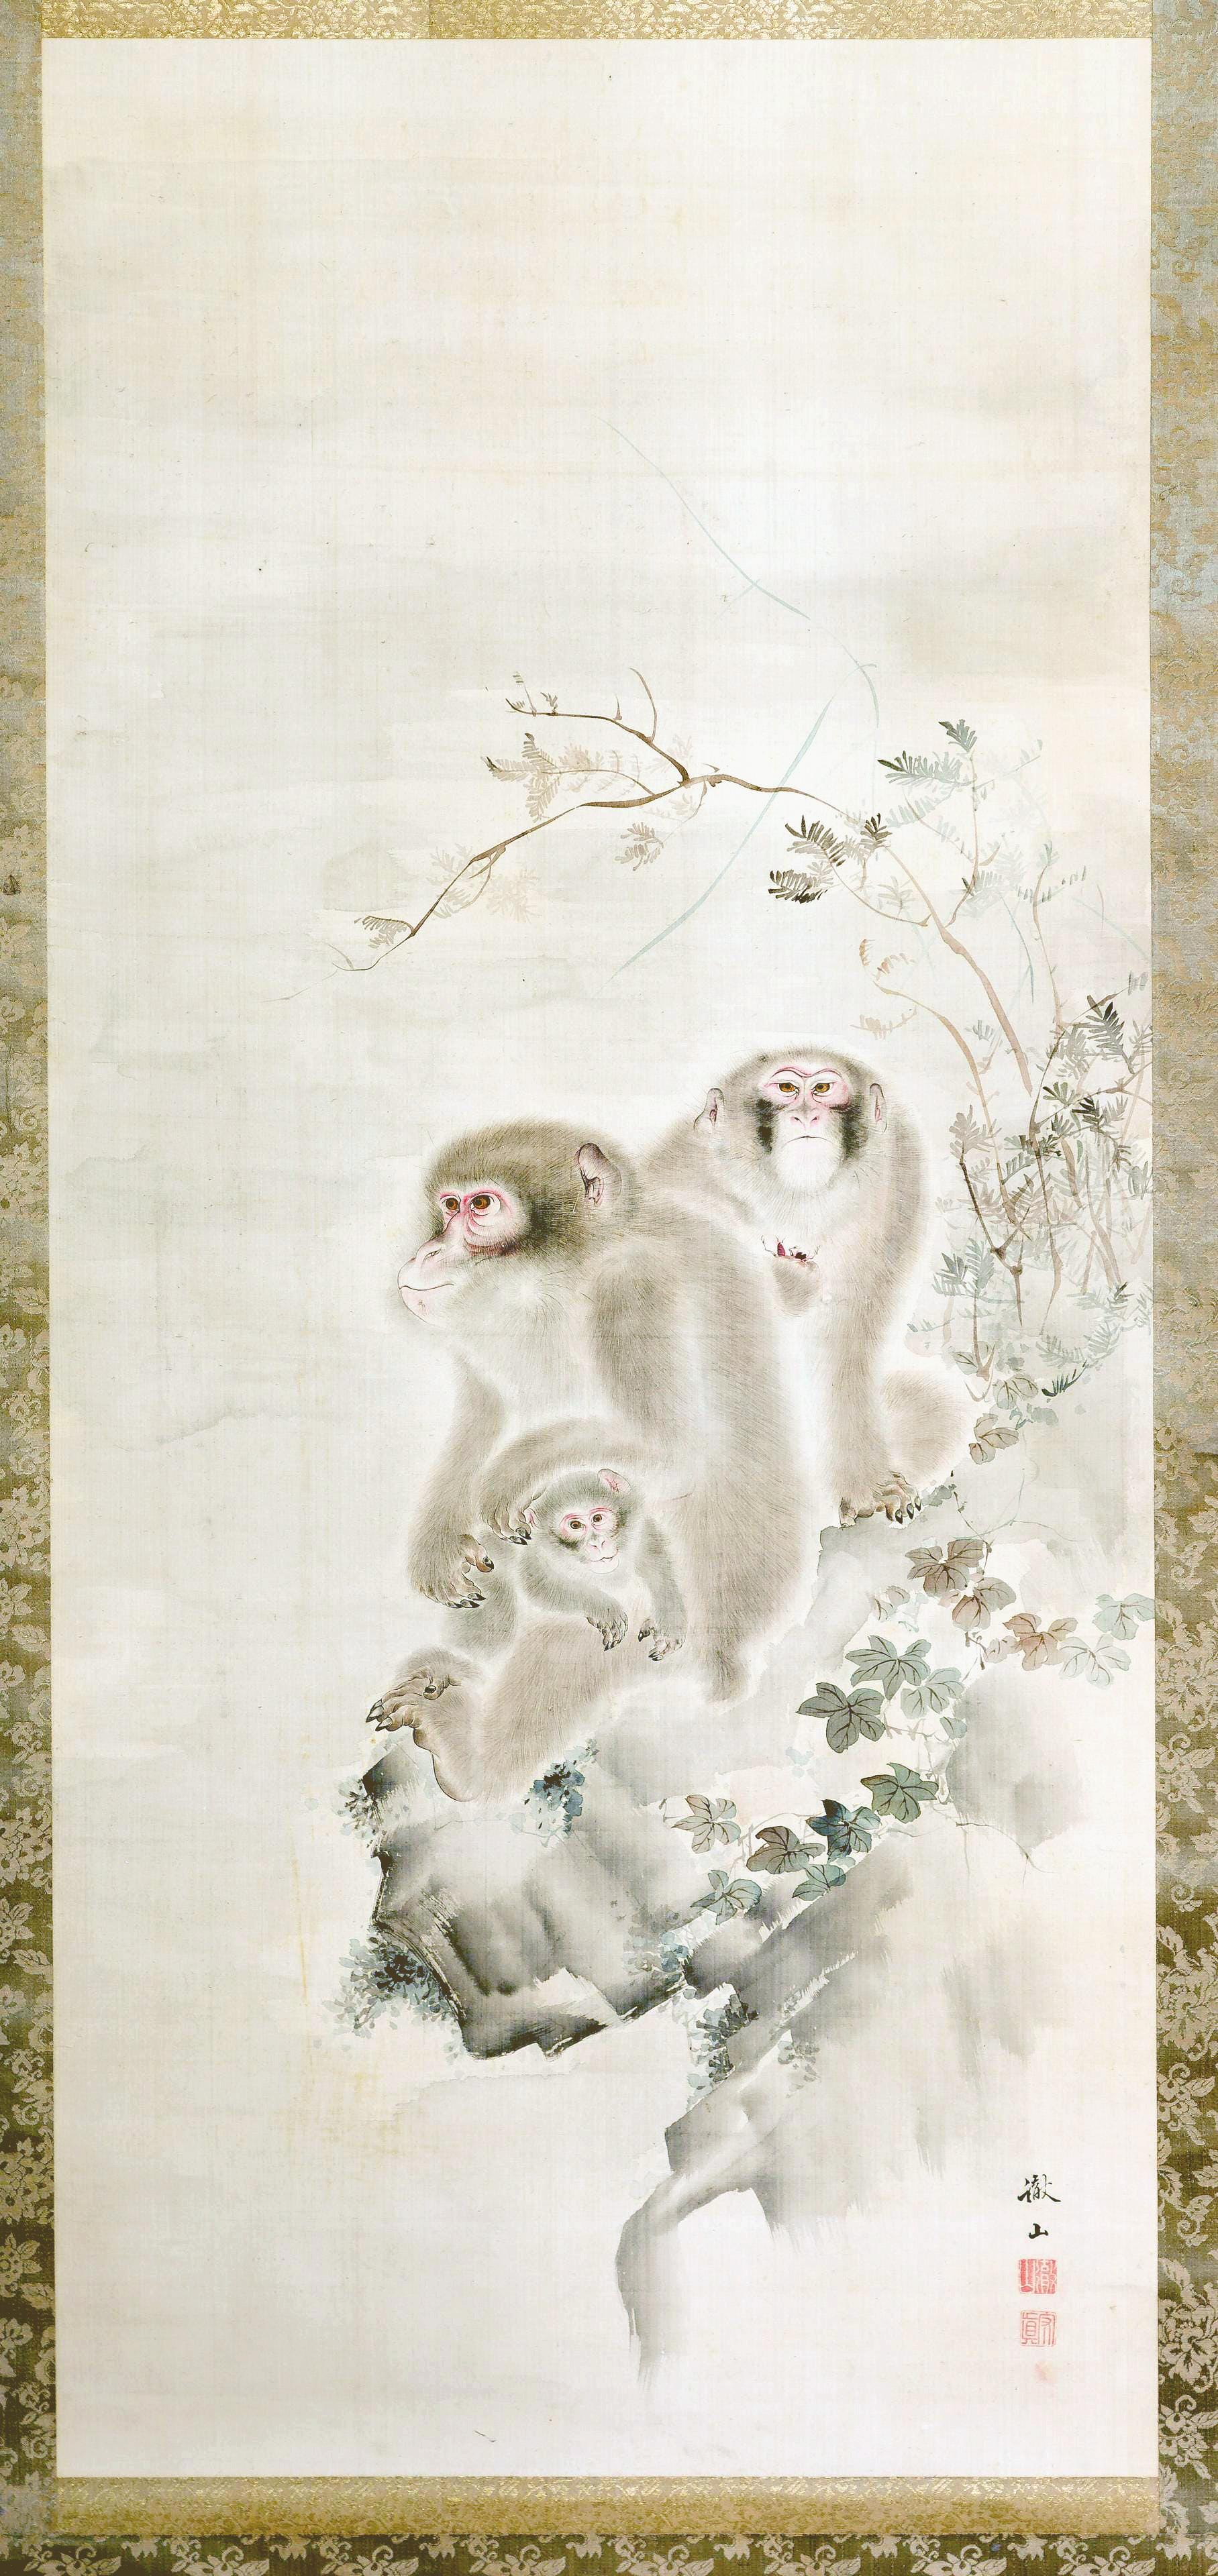 Peinture japonaise sur rouleau vertical monté, réalisée par Mori Tetsuzan (Japonais, 1775-1841), vers le XIXe siècle, période Edo. Cette peinture à l'aquarelle et à l'encre sur soie représente une famille de trois moneys perchés sur un rocher dans